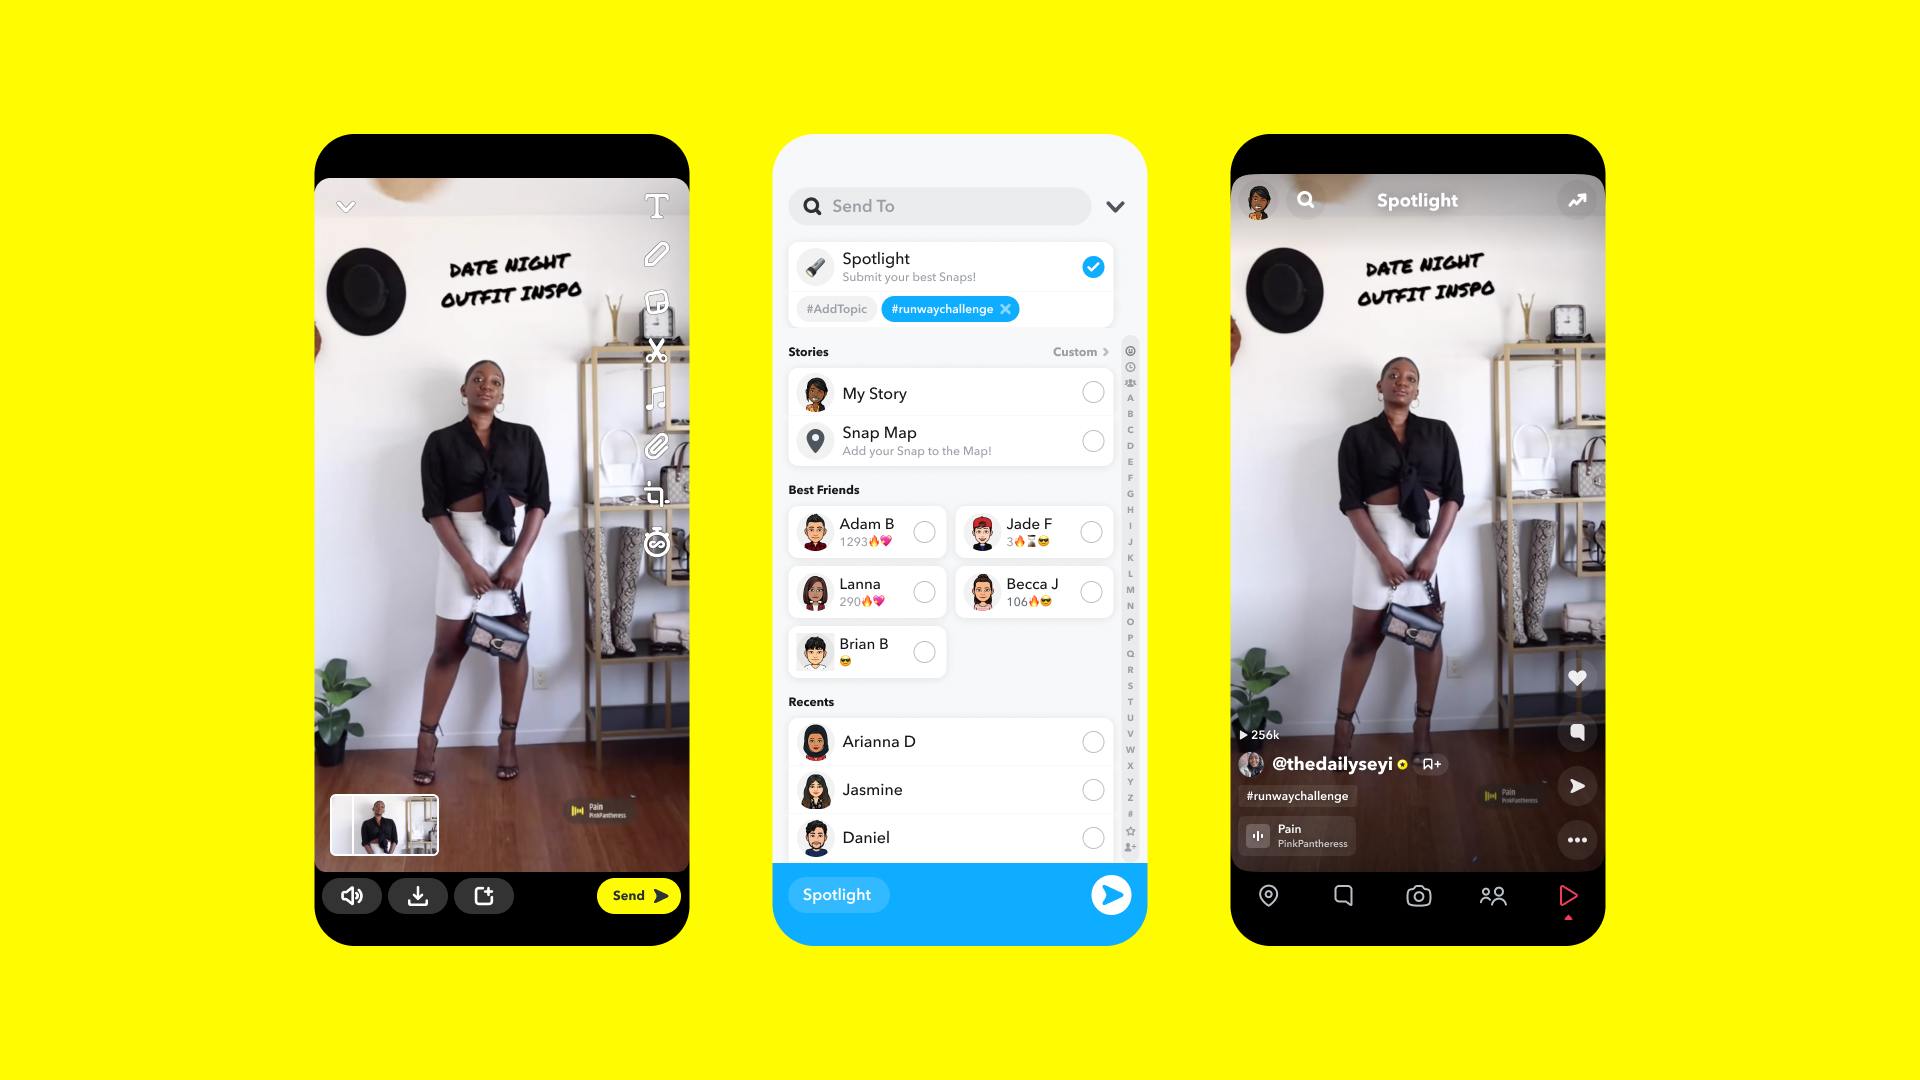 snapchat'in spot ışığı özelliğinin ekran görüntüleri